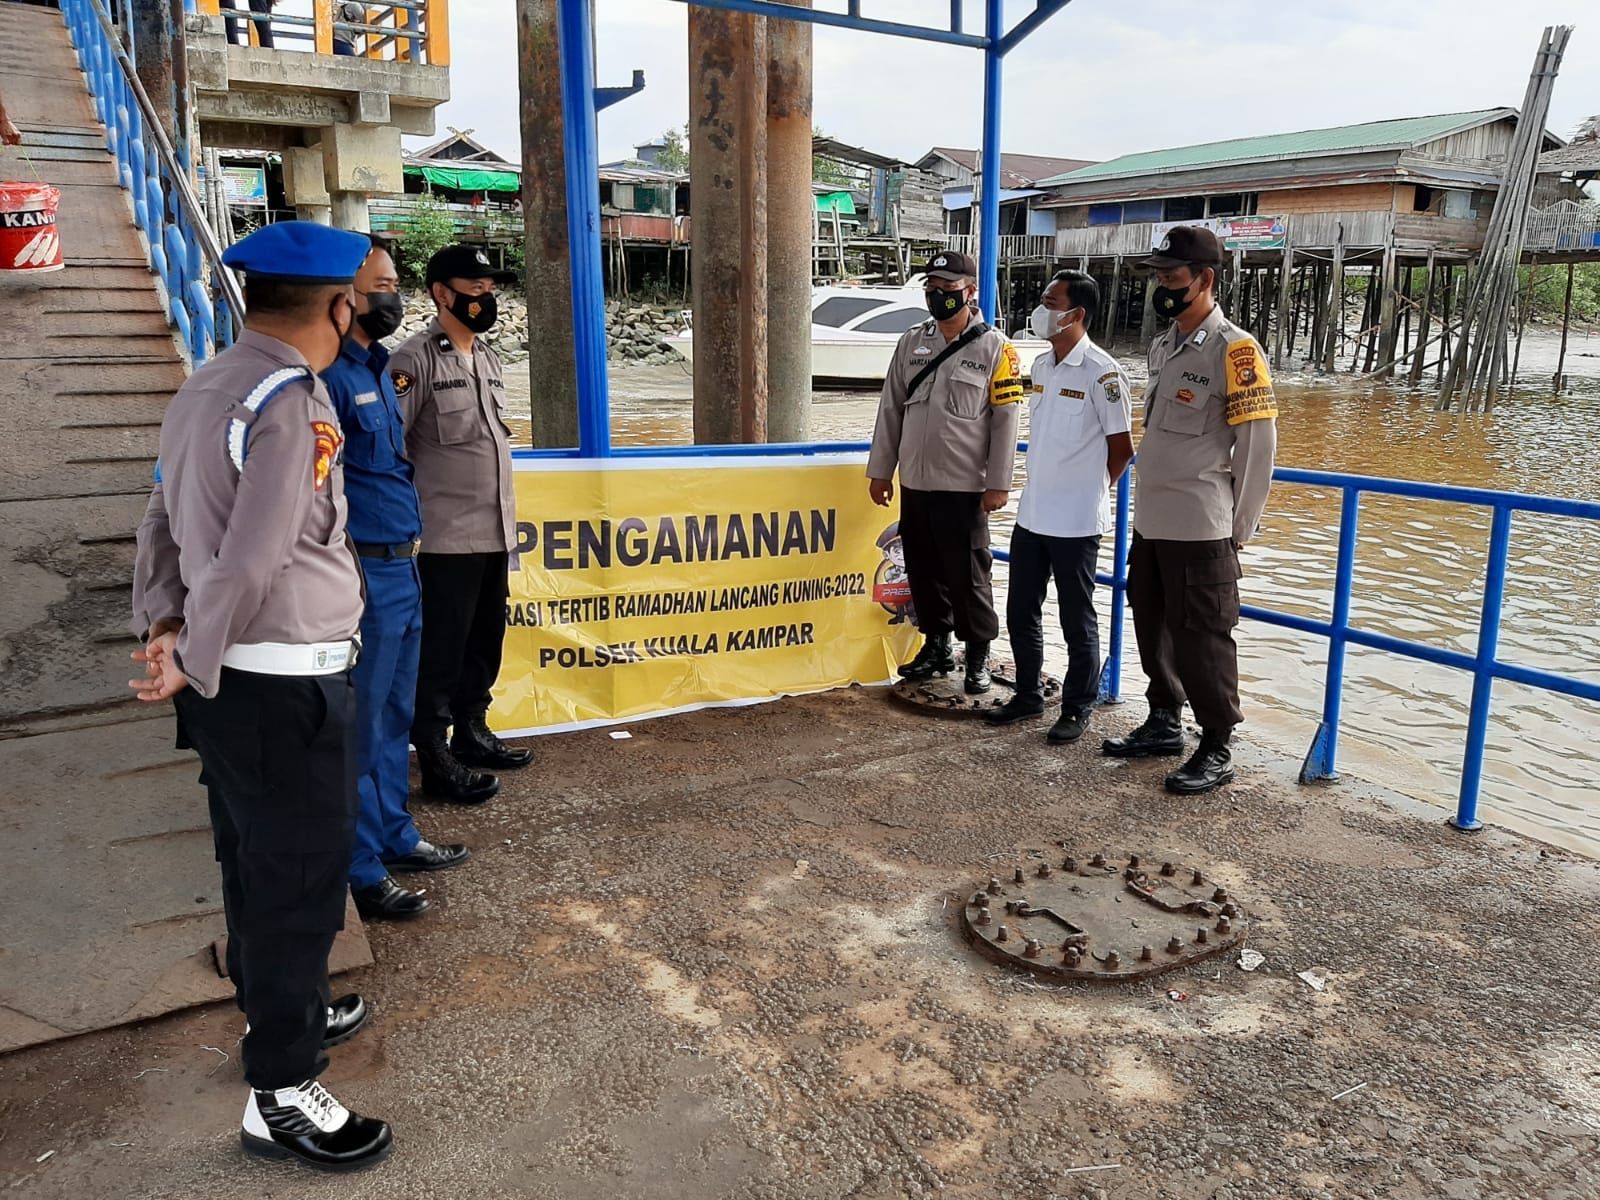 Pantau Aktivitas Warga, Polsek Kuala Kampar Patroli di Pelabuhan Teluk Dalam